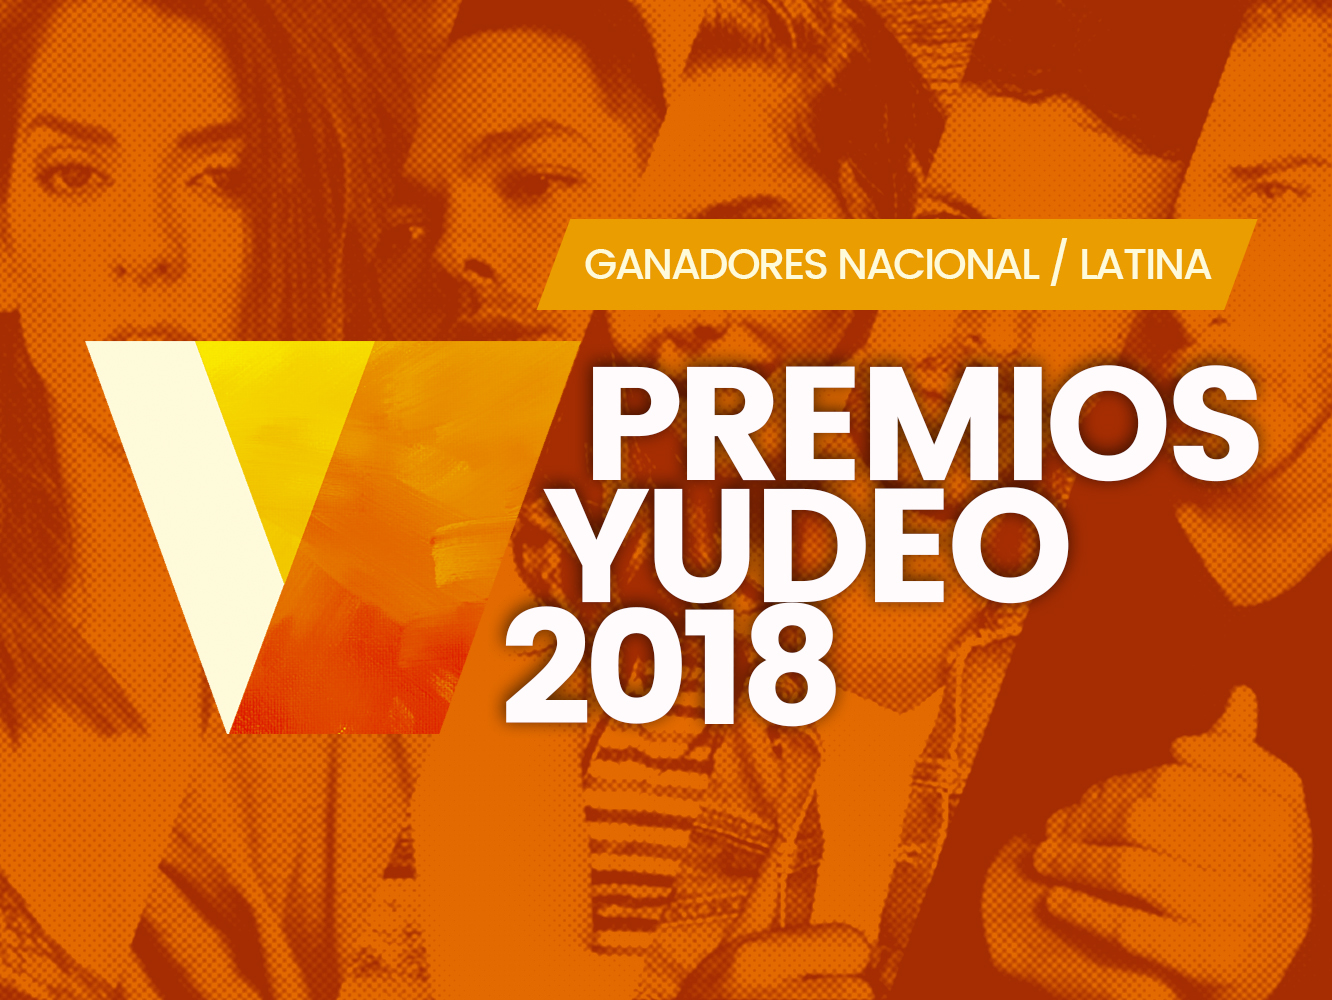 Premios Yudeo 2018 | Ruth Lorenzo arrasa (5) y Sergio Rivero da la sorpresa (3) en la categoría nacional o latina